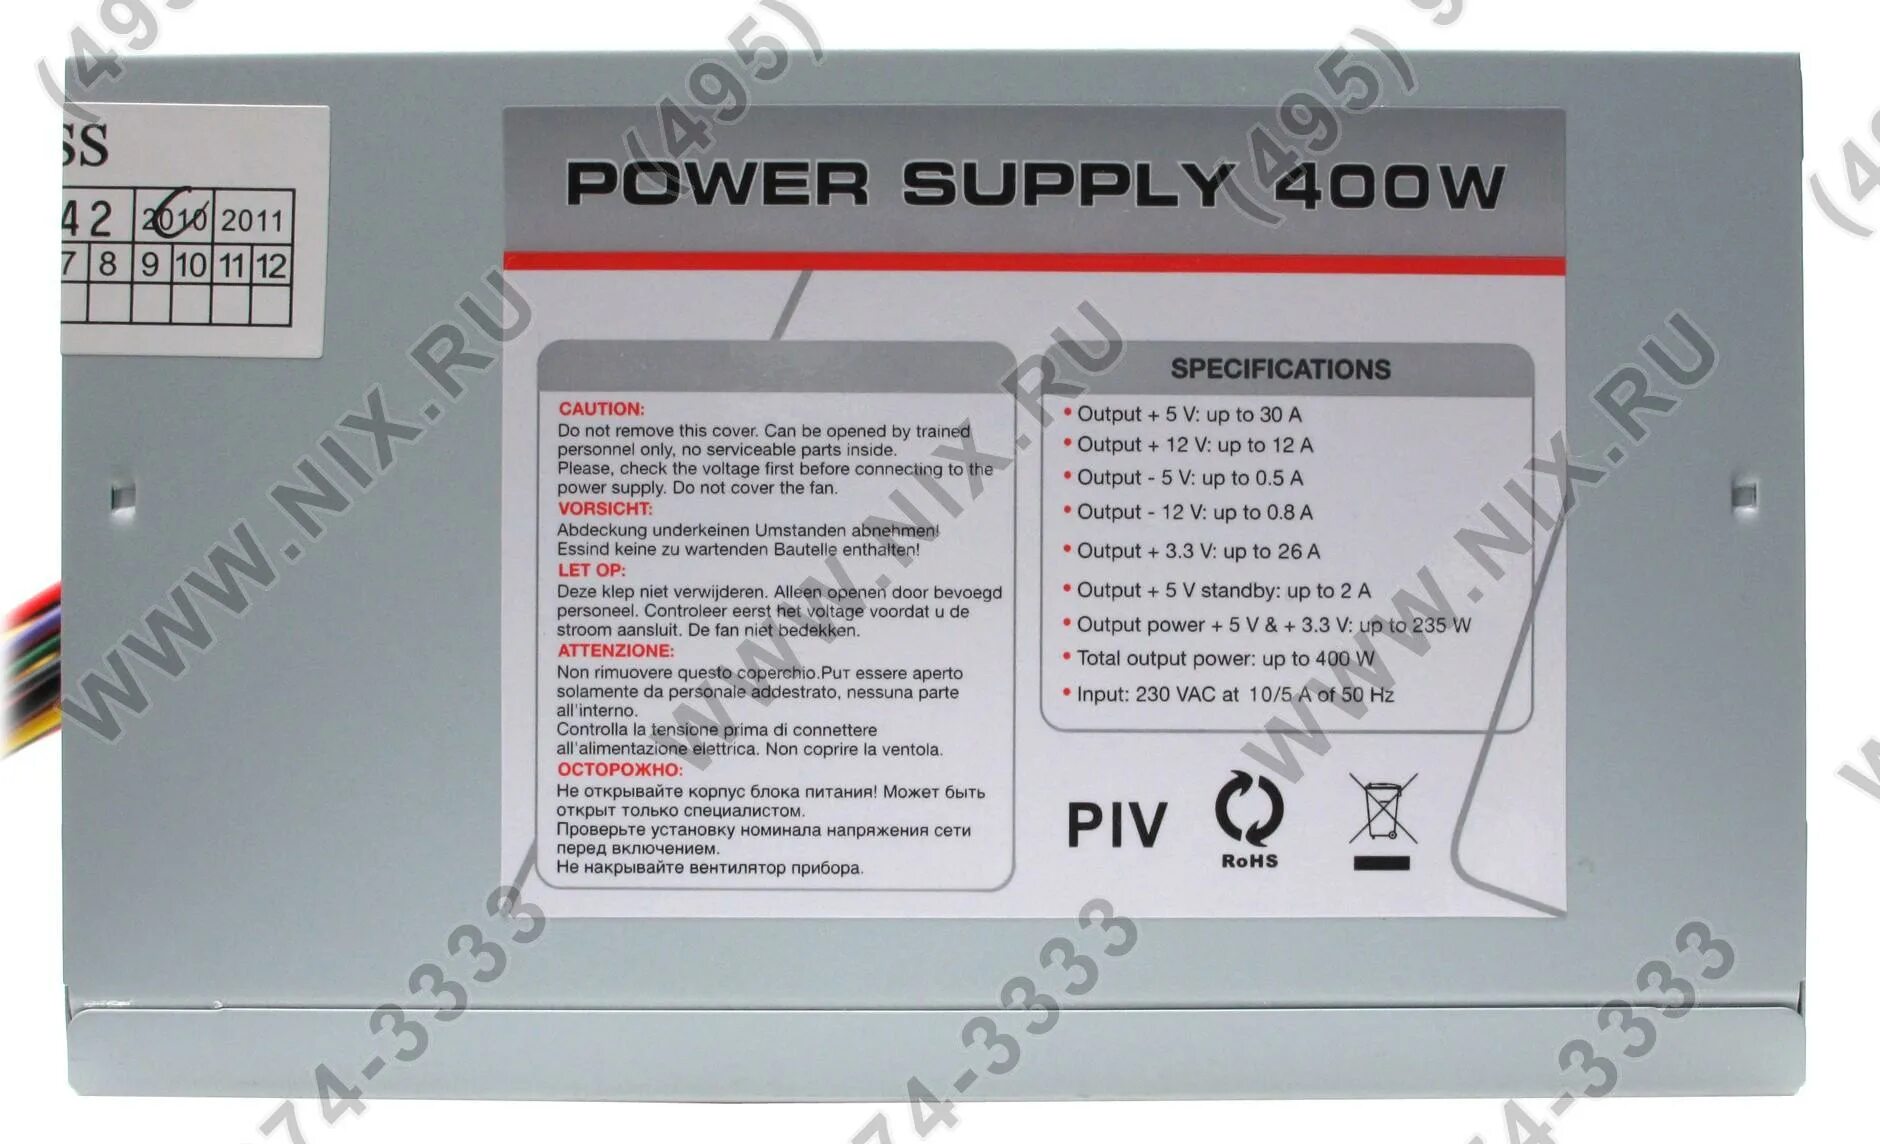 Блок питания функции. Блок питания от компьютера Power Supply 400w. Блок питания High Power si-a400m2 400w. Блок питания w300u2428&12. Блок питания Power Supply 400w характеристики.